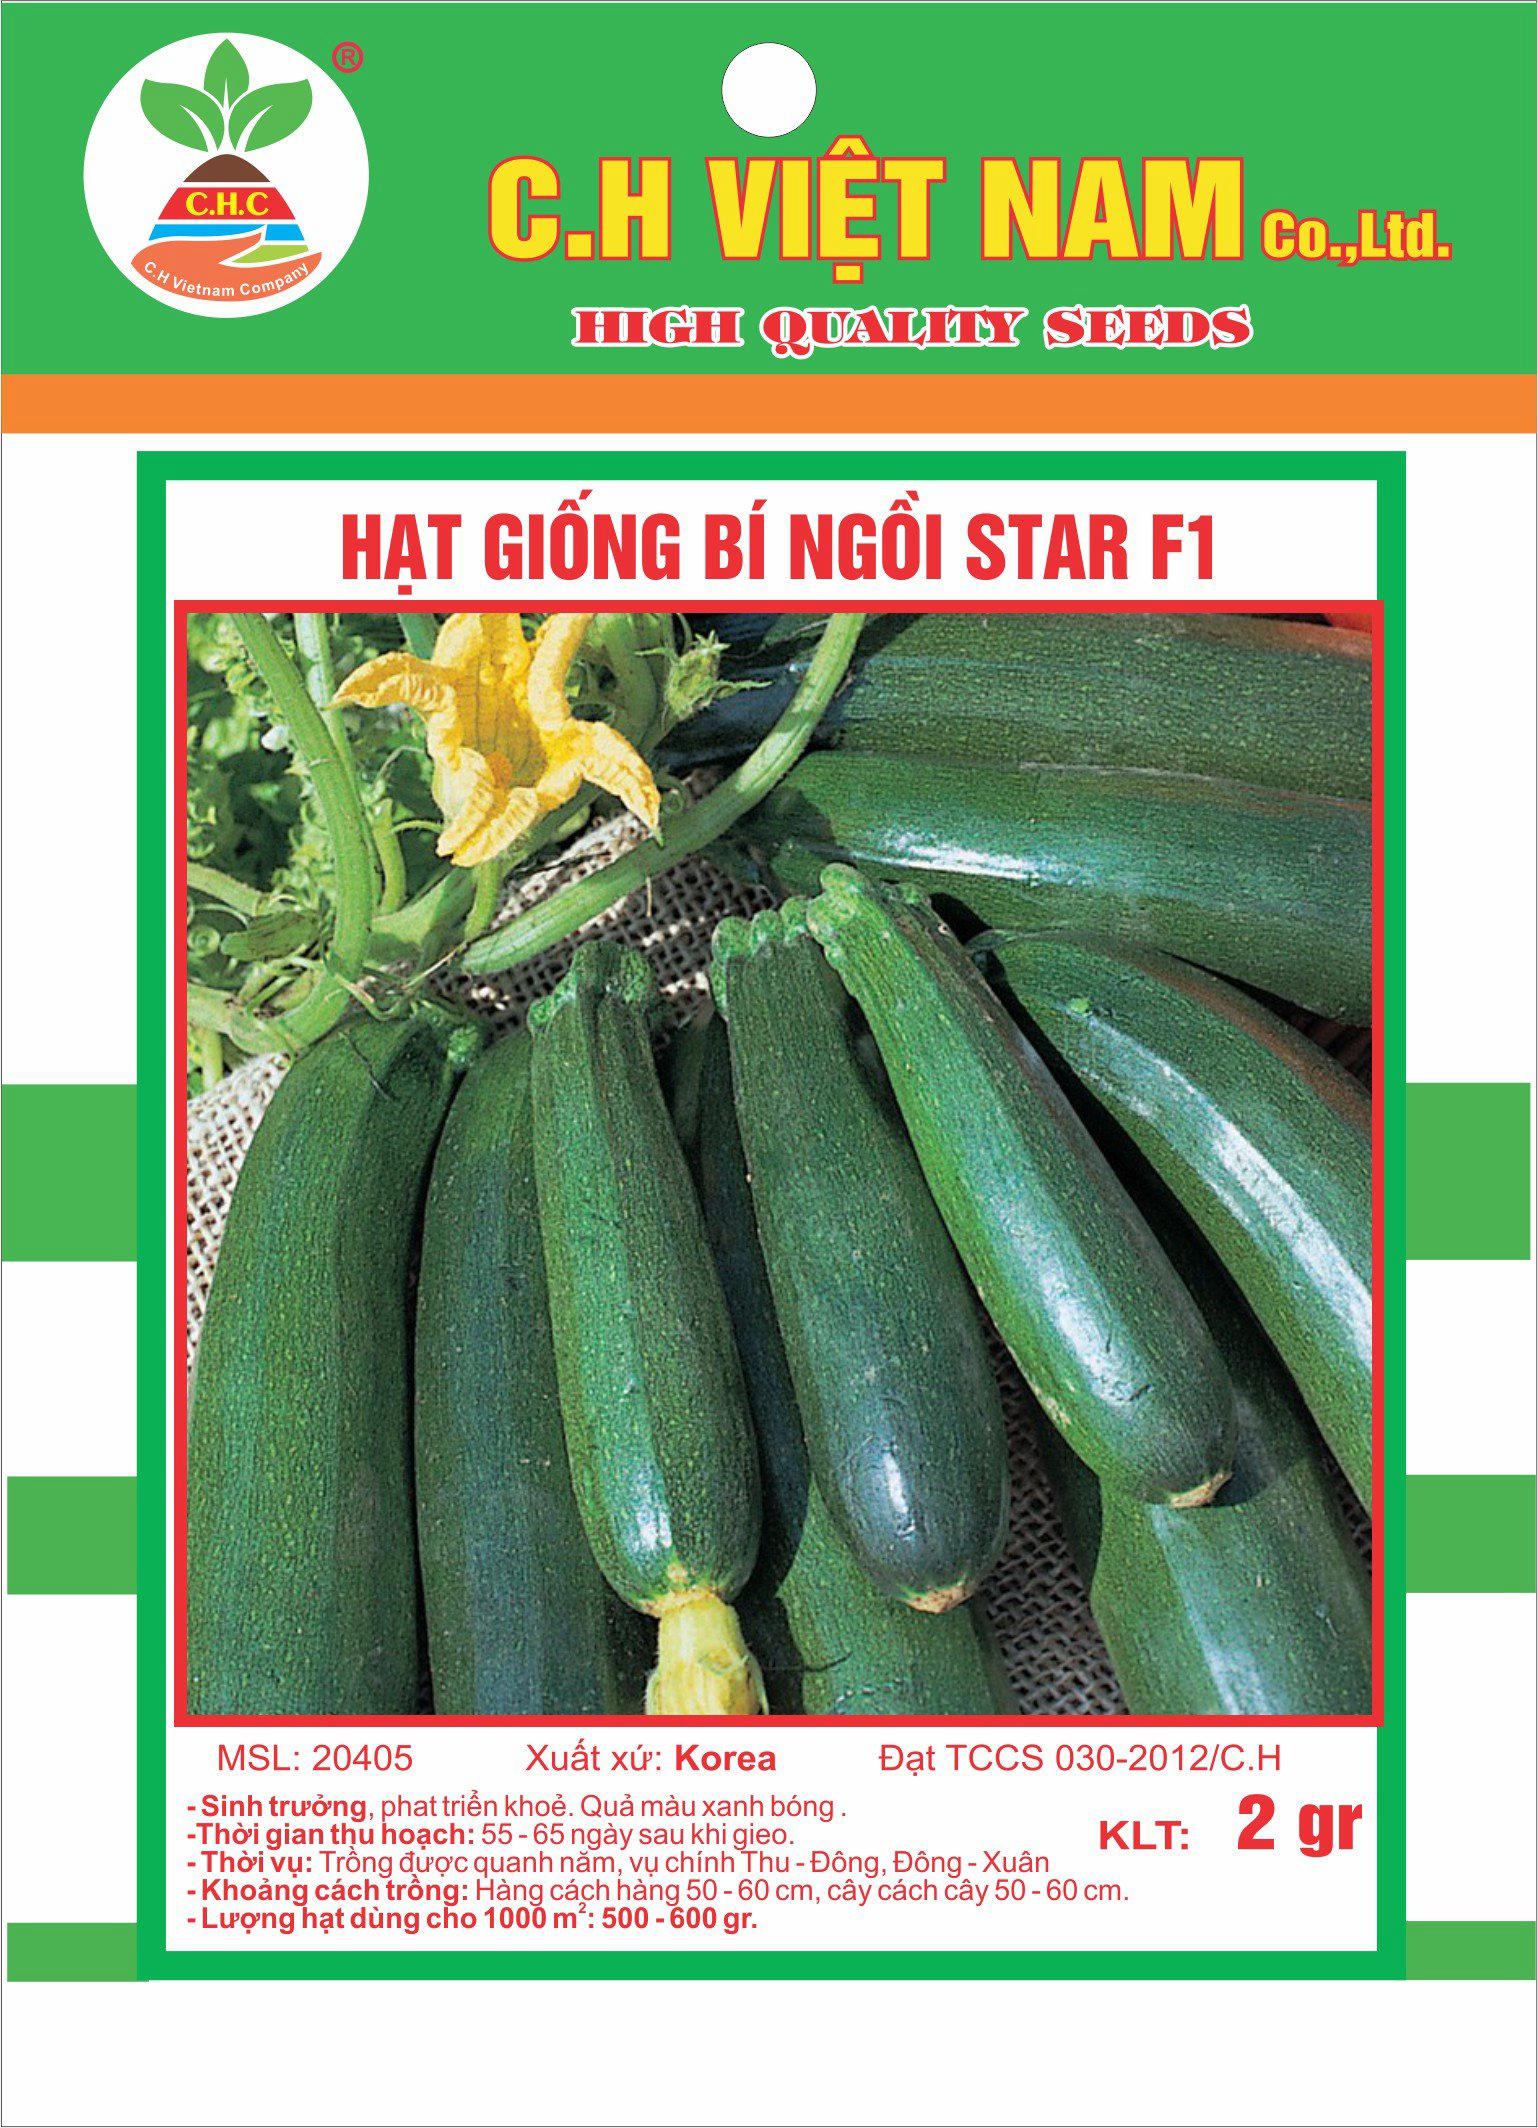 Star F1 zucchini seeds